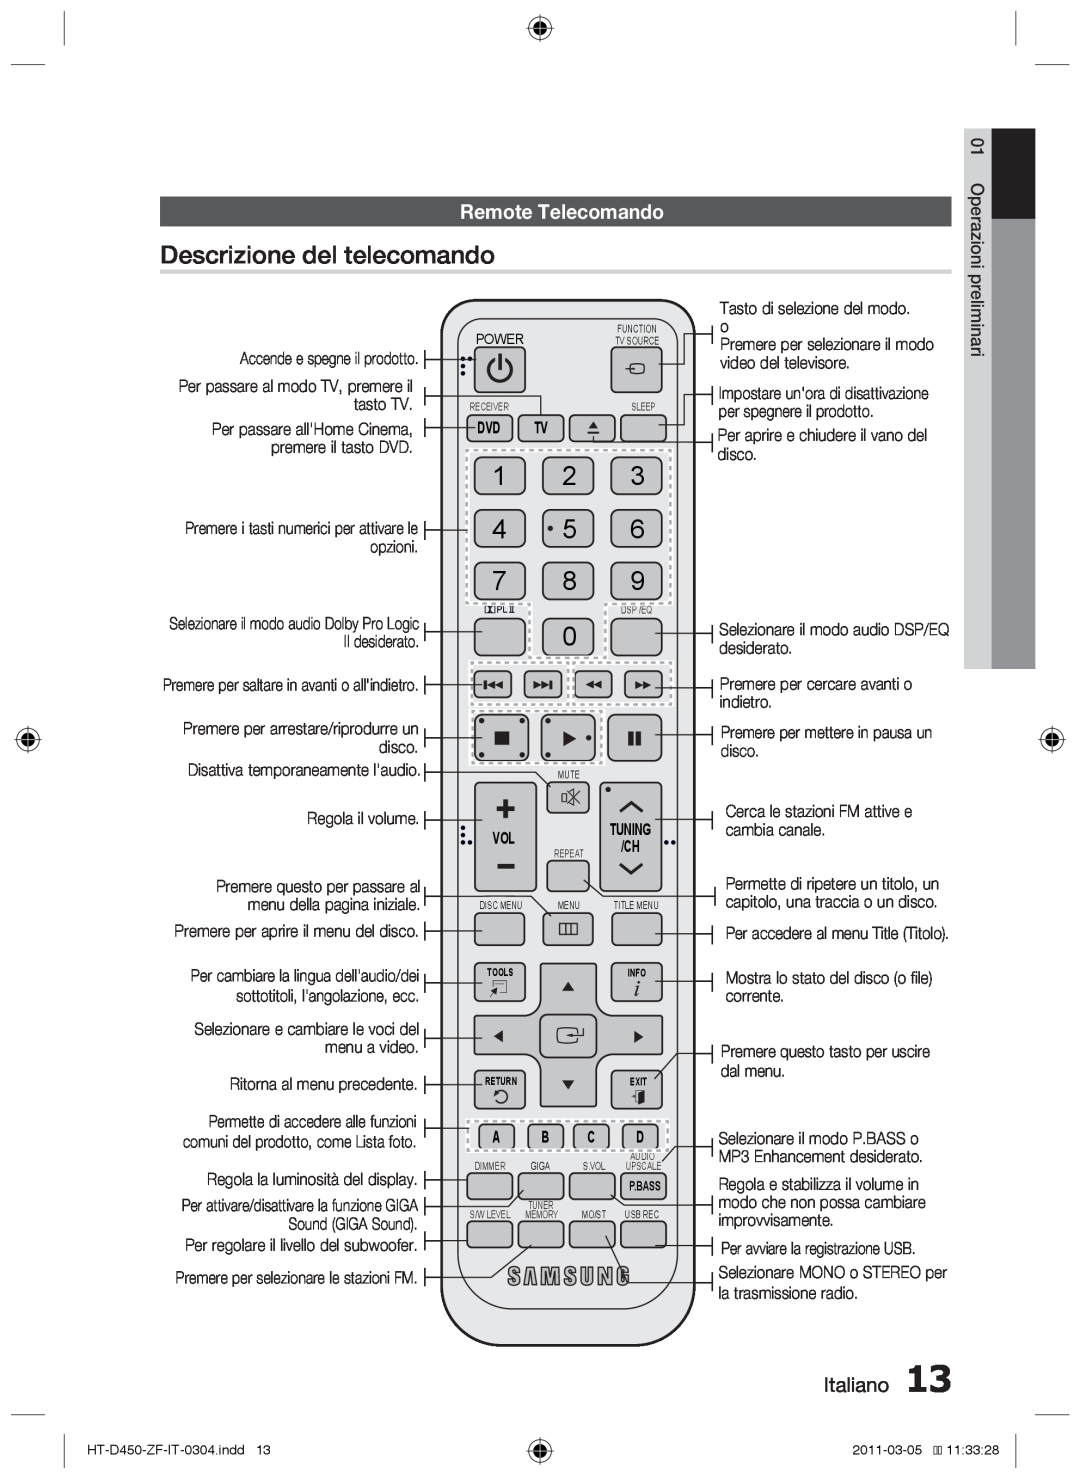 Samsung HT-D455, HT-D450, HT-D453 user manual Descrizione del telecomando, Remote Telecomando, Italiano 